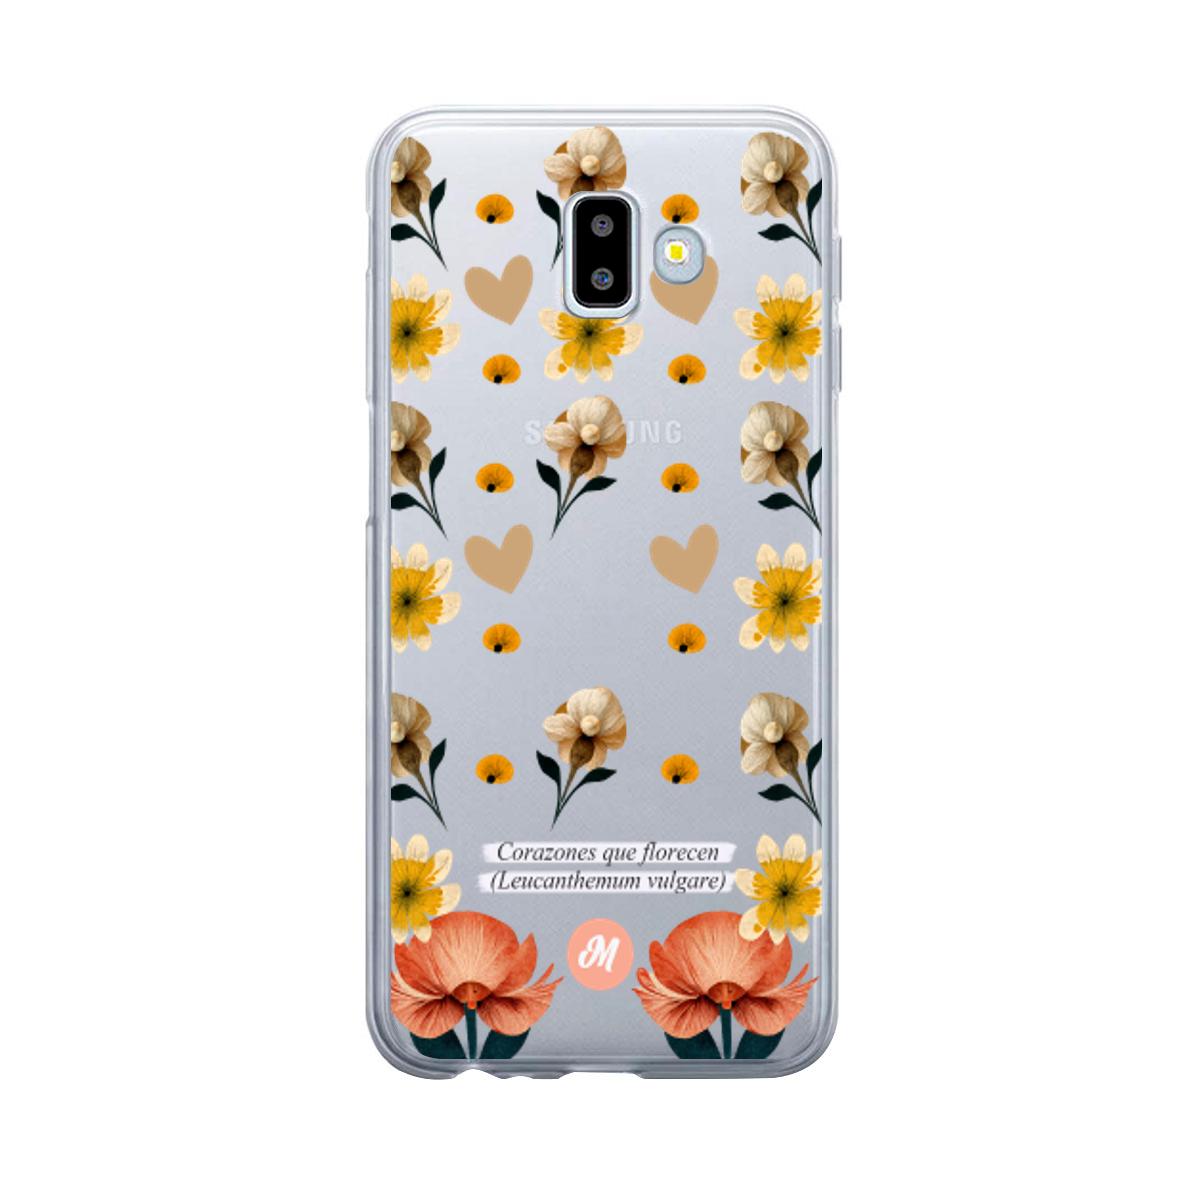 Cases para Samsung J6 Plus Corazones que florecen - Mandala Cases